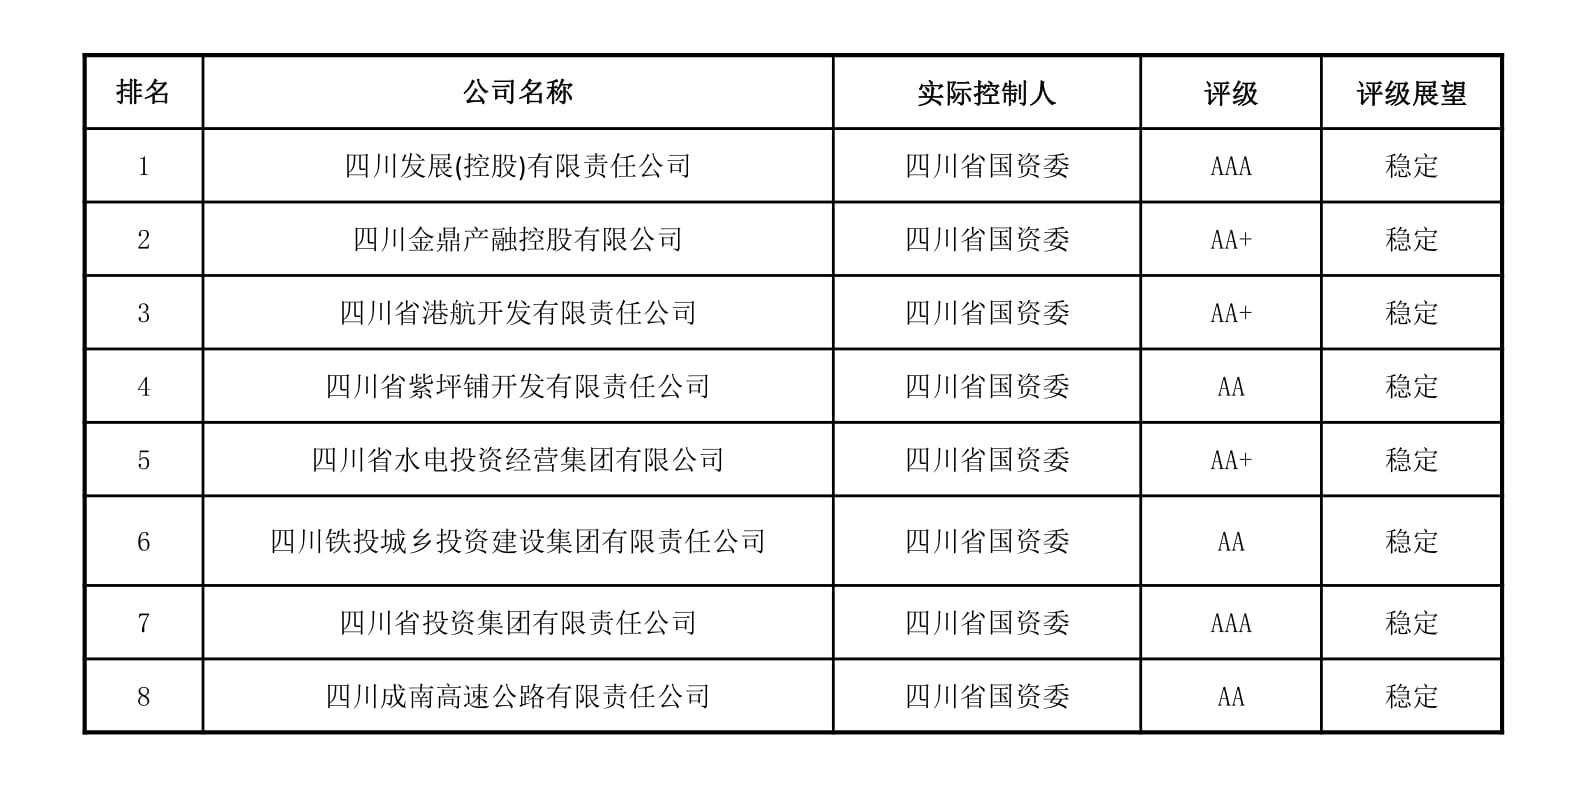 优化战略定位 防范债务风险——四川省地方政府投融资平台转型发展评价报告发布